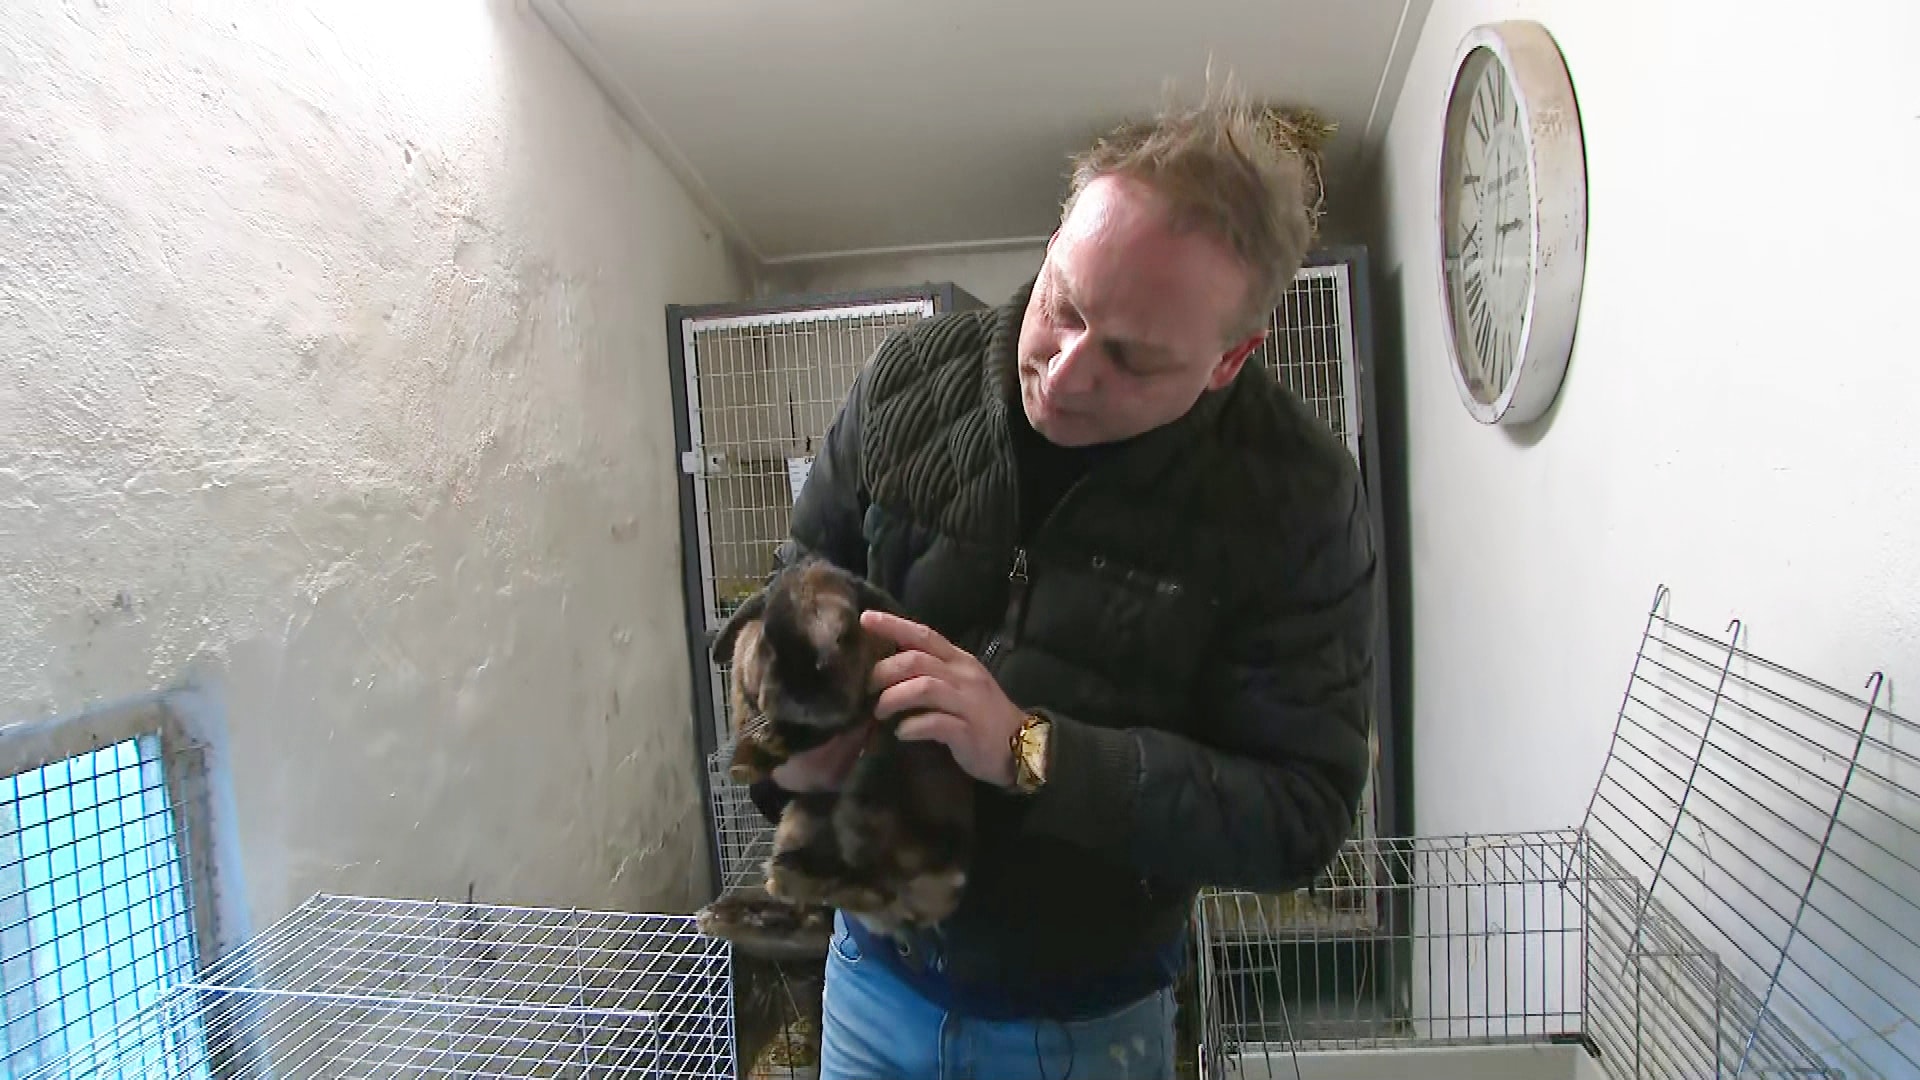 Carl van dierenopvang Flappus in shock na vondst 184 gedumpte dieren: 'Niet prettig' 